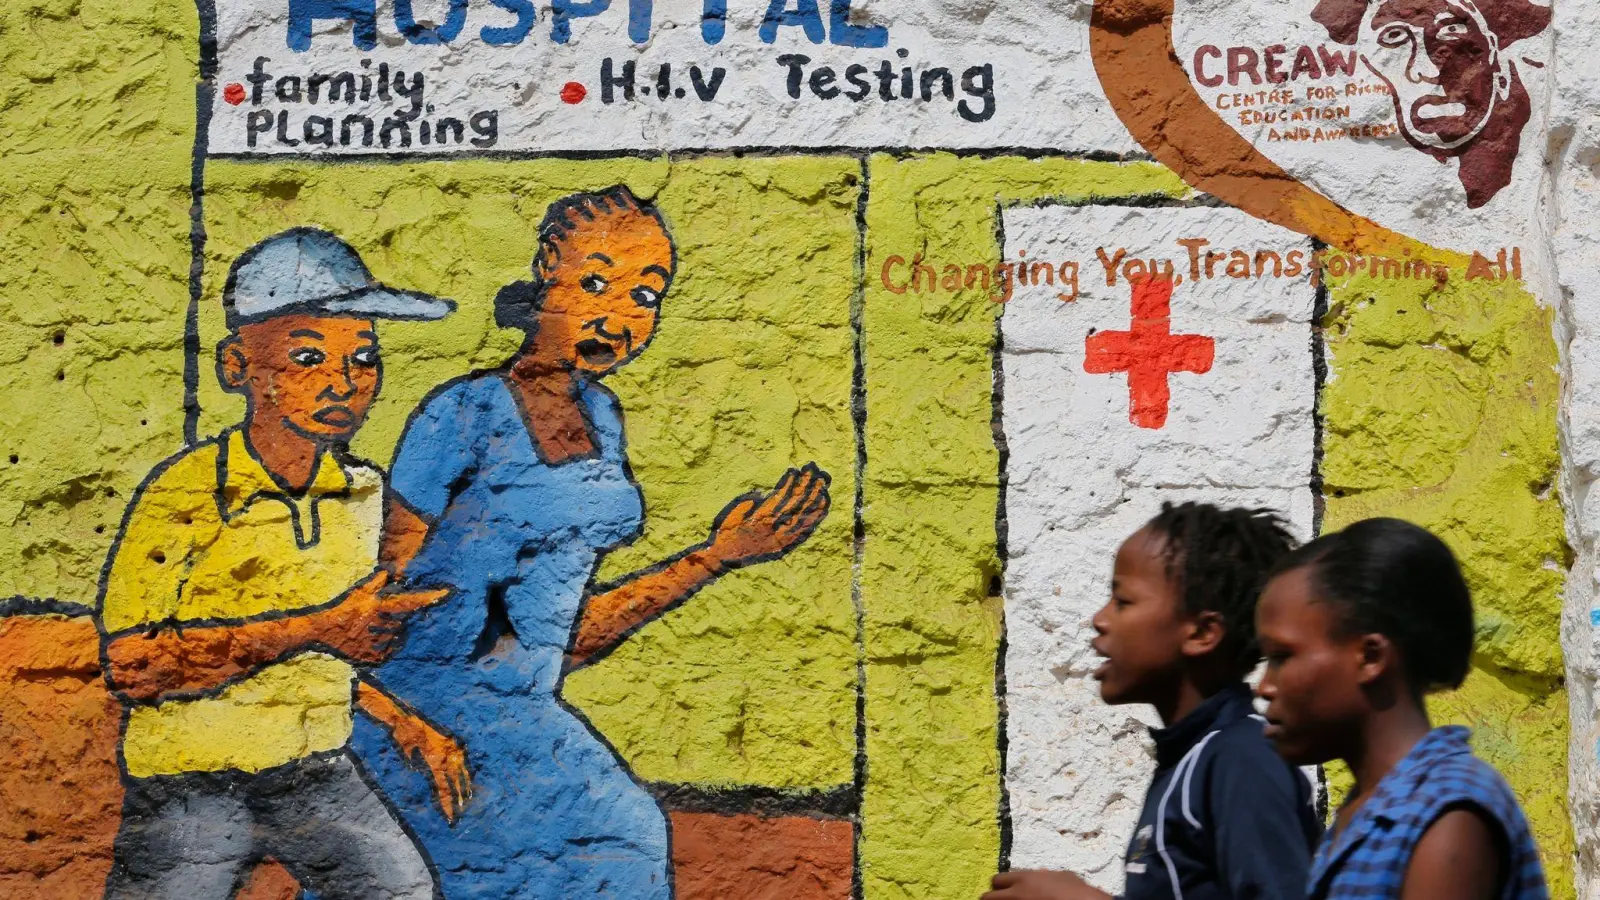 Auf dem Wandgemälde in Nairobi wird auf HIV und AIDS aufmerksam gemacht. (Foto: picture alliance / dpa)